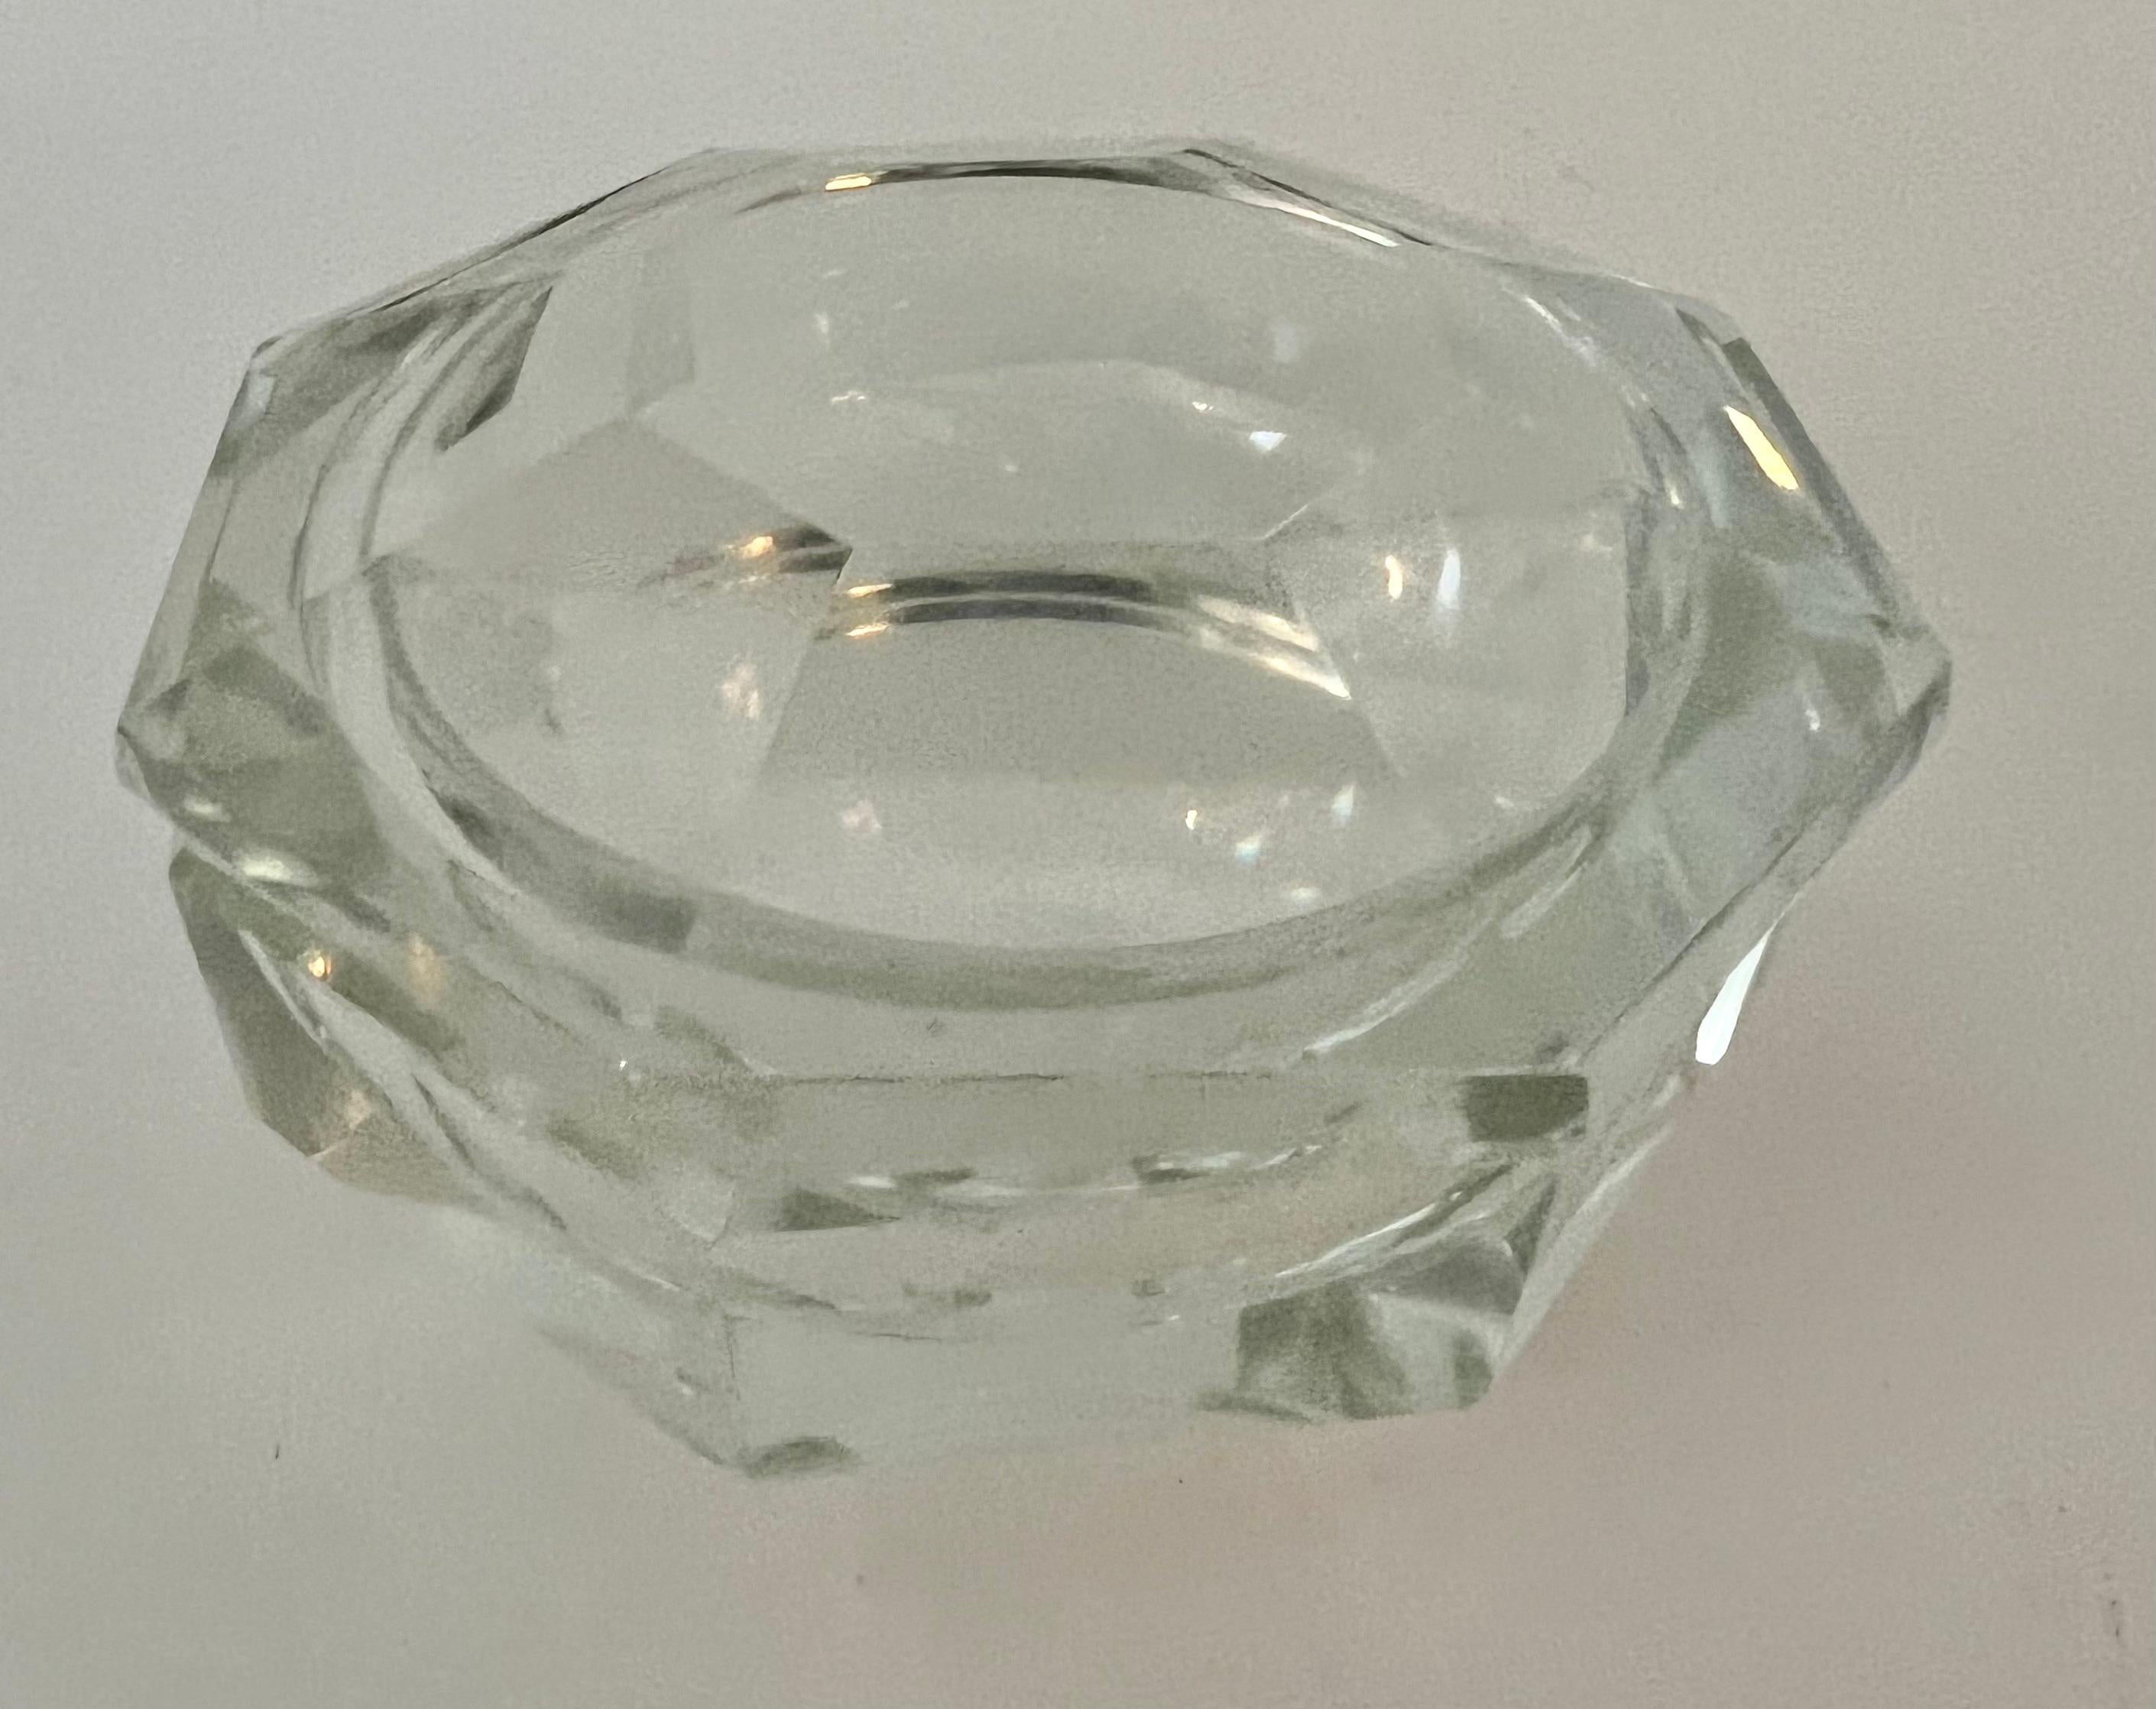 Coupe octogonale en cristal avec couvercle octogonal. Un design très unique et un complément à toute table de cocktail - la pièce est un bel objet décoratif ou fonctionne bien comme un bol pour les bonbons et les noix. Il peut également être placé